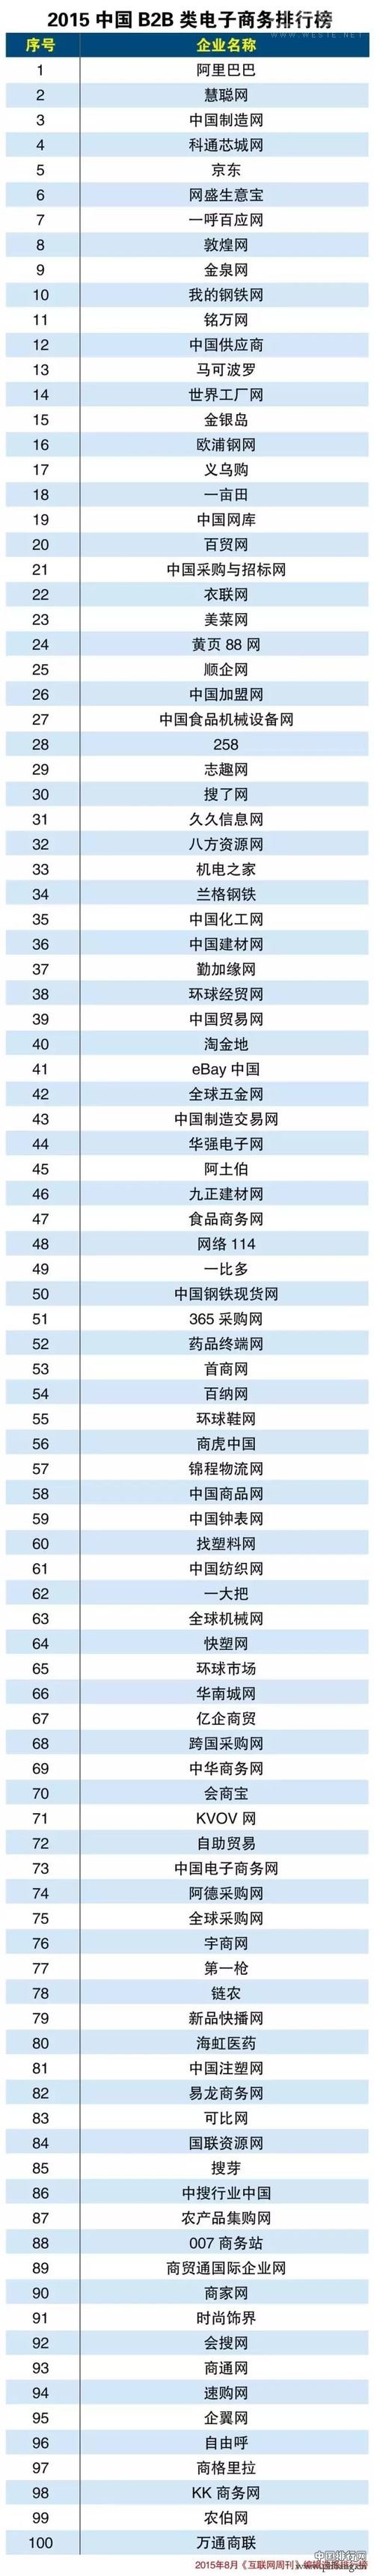 2015中国B2B电商排行榜